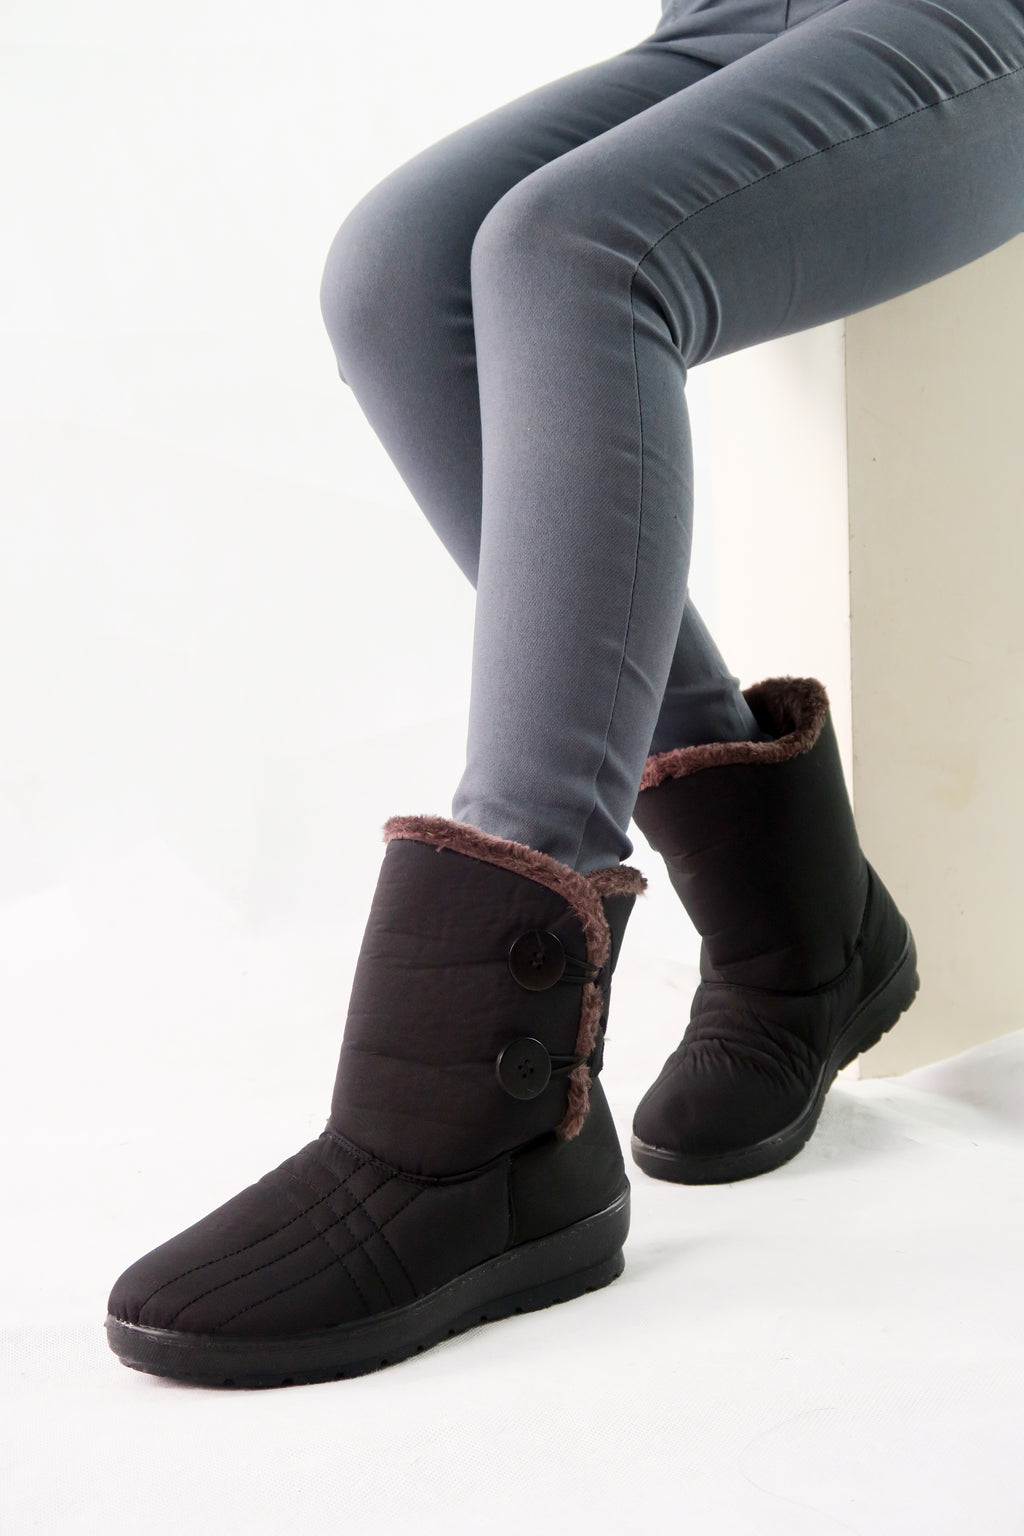 รองเท้าบูทกันหนาวแต่งกระดุมขนเฟอร์ 1602- Waterproof Button Faux Fur Lined Winter Boots